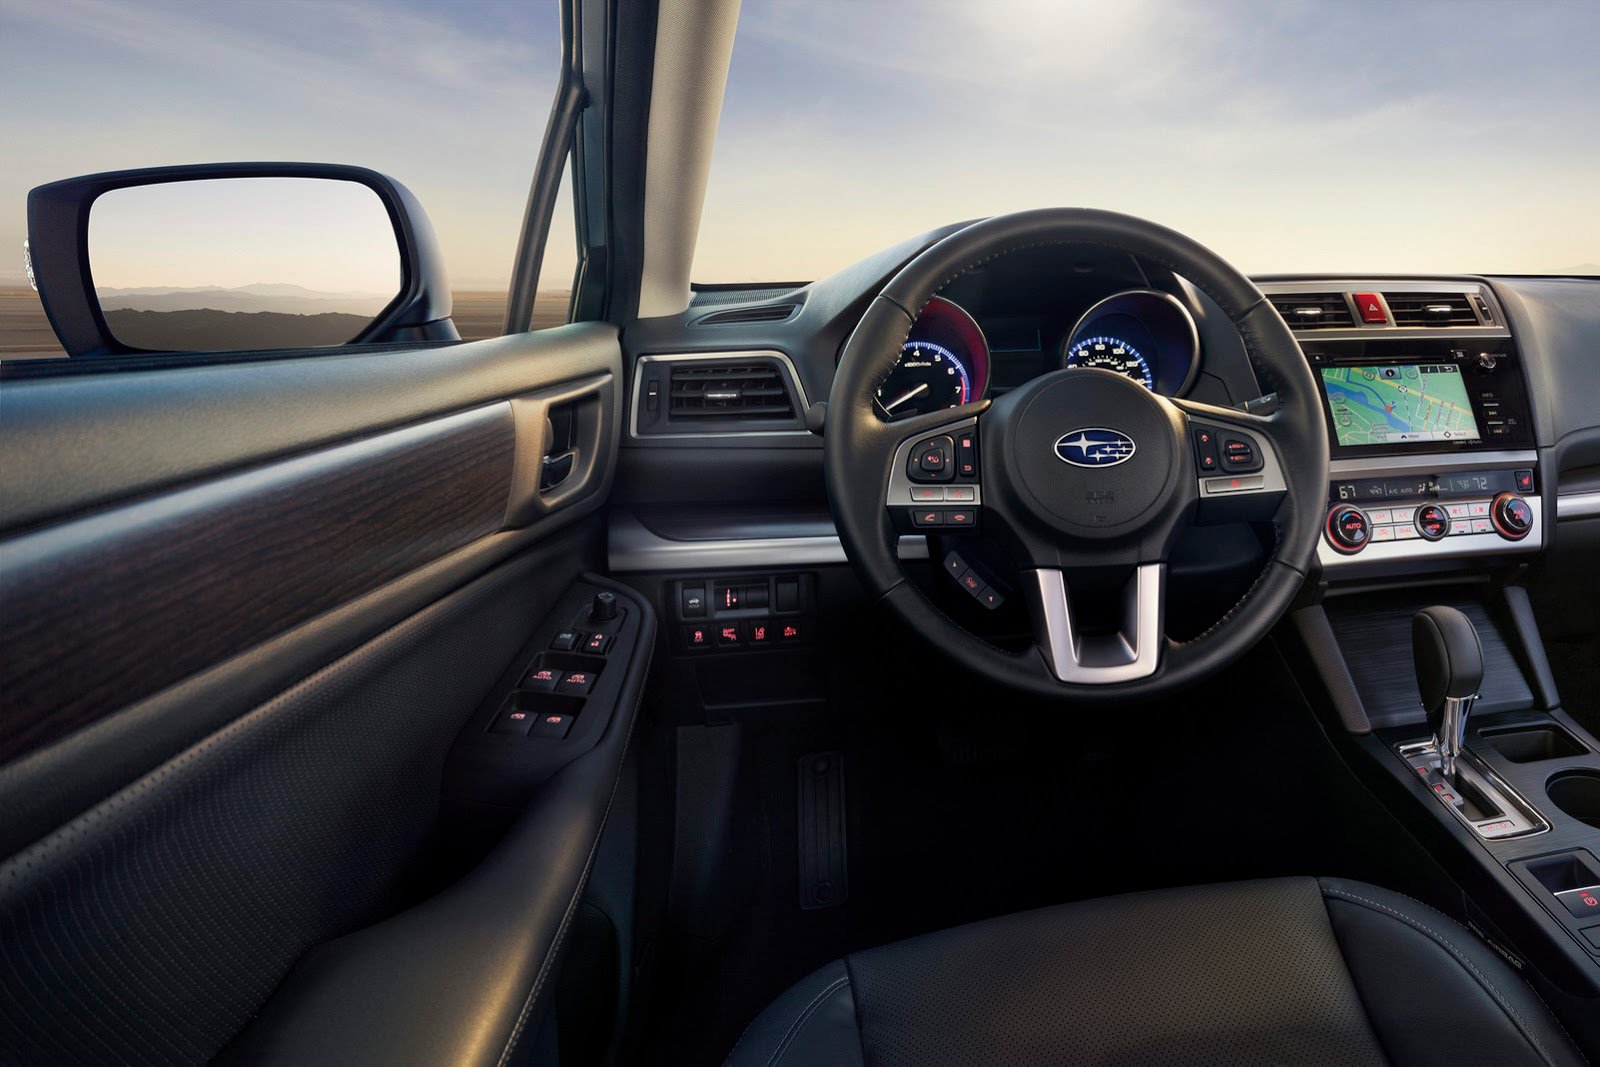 Subaru Legacy 2015 модельного года